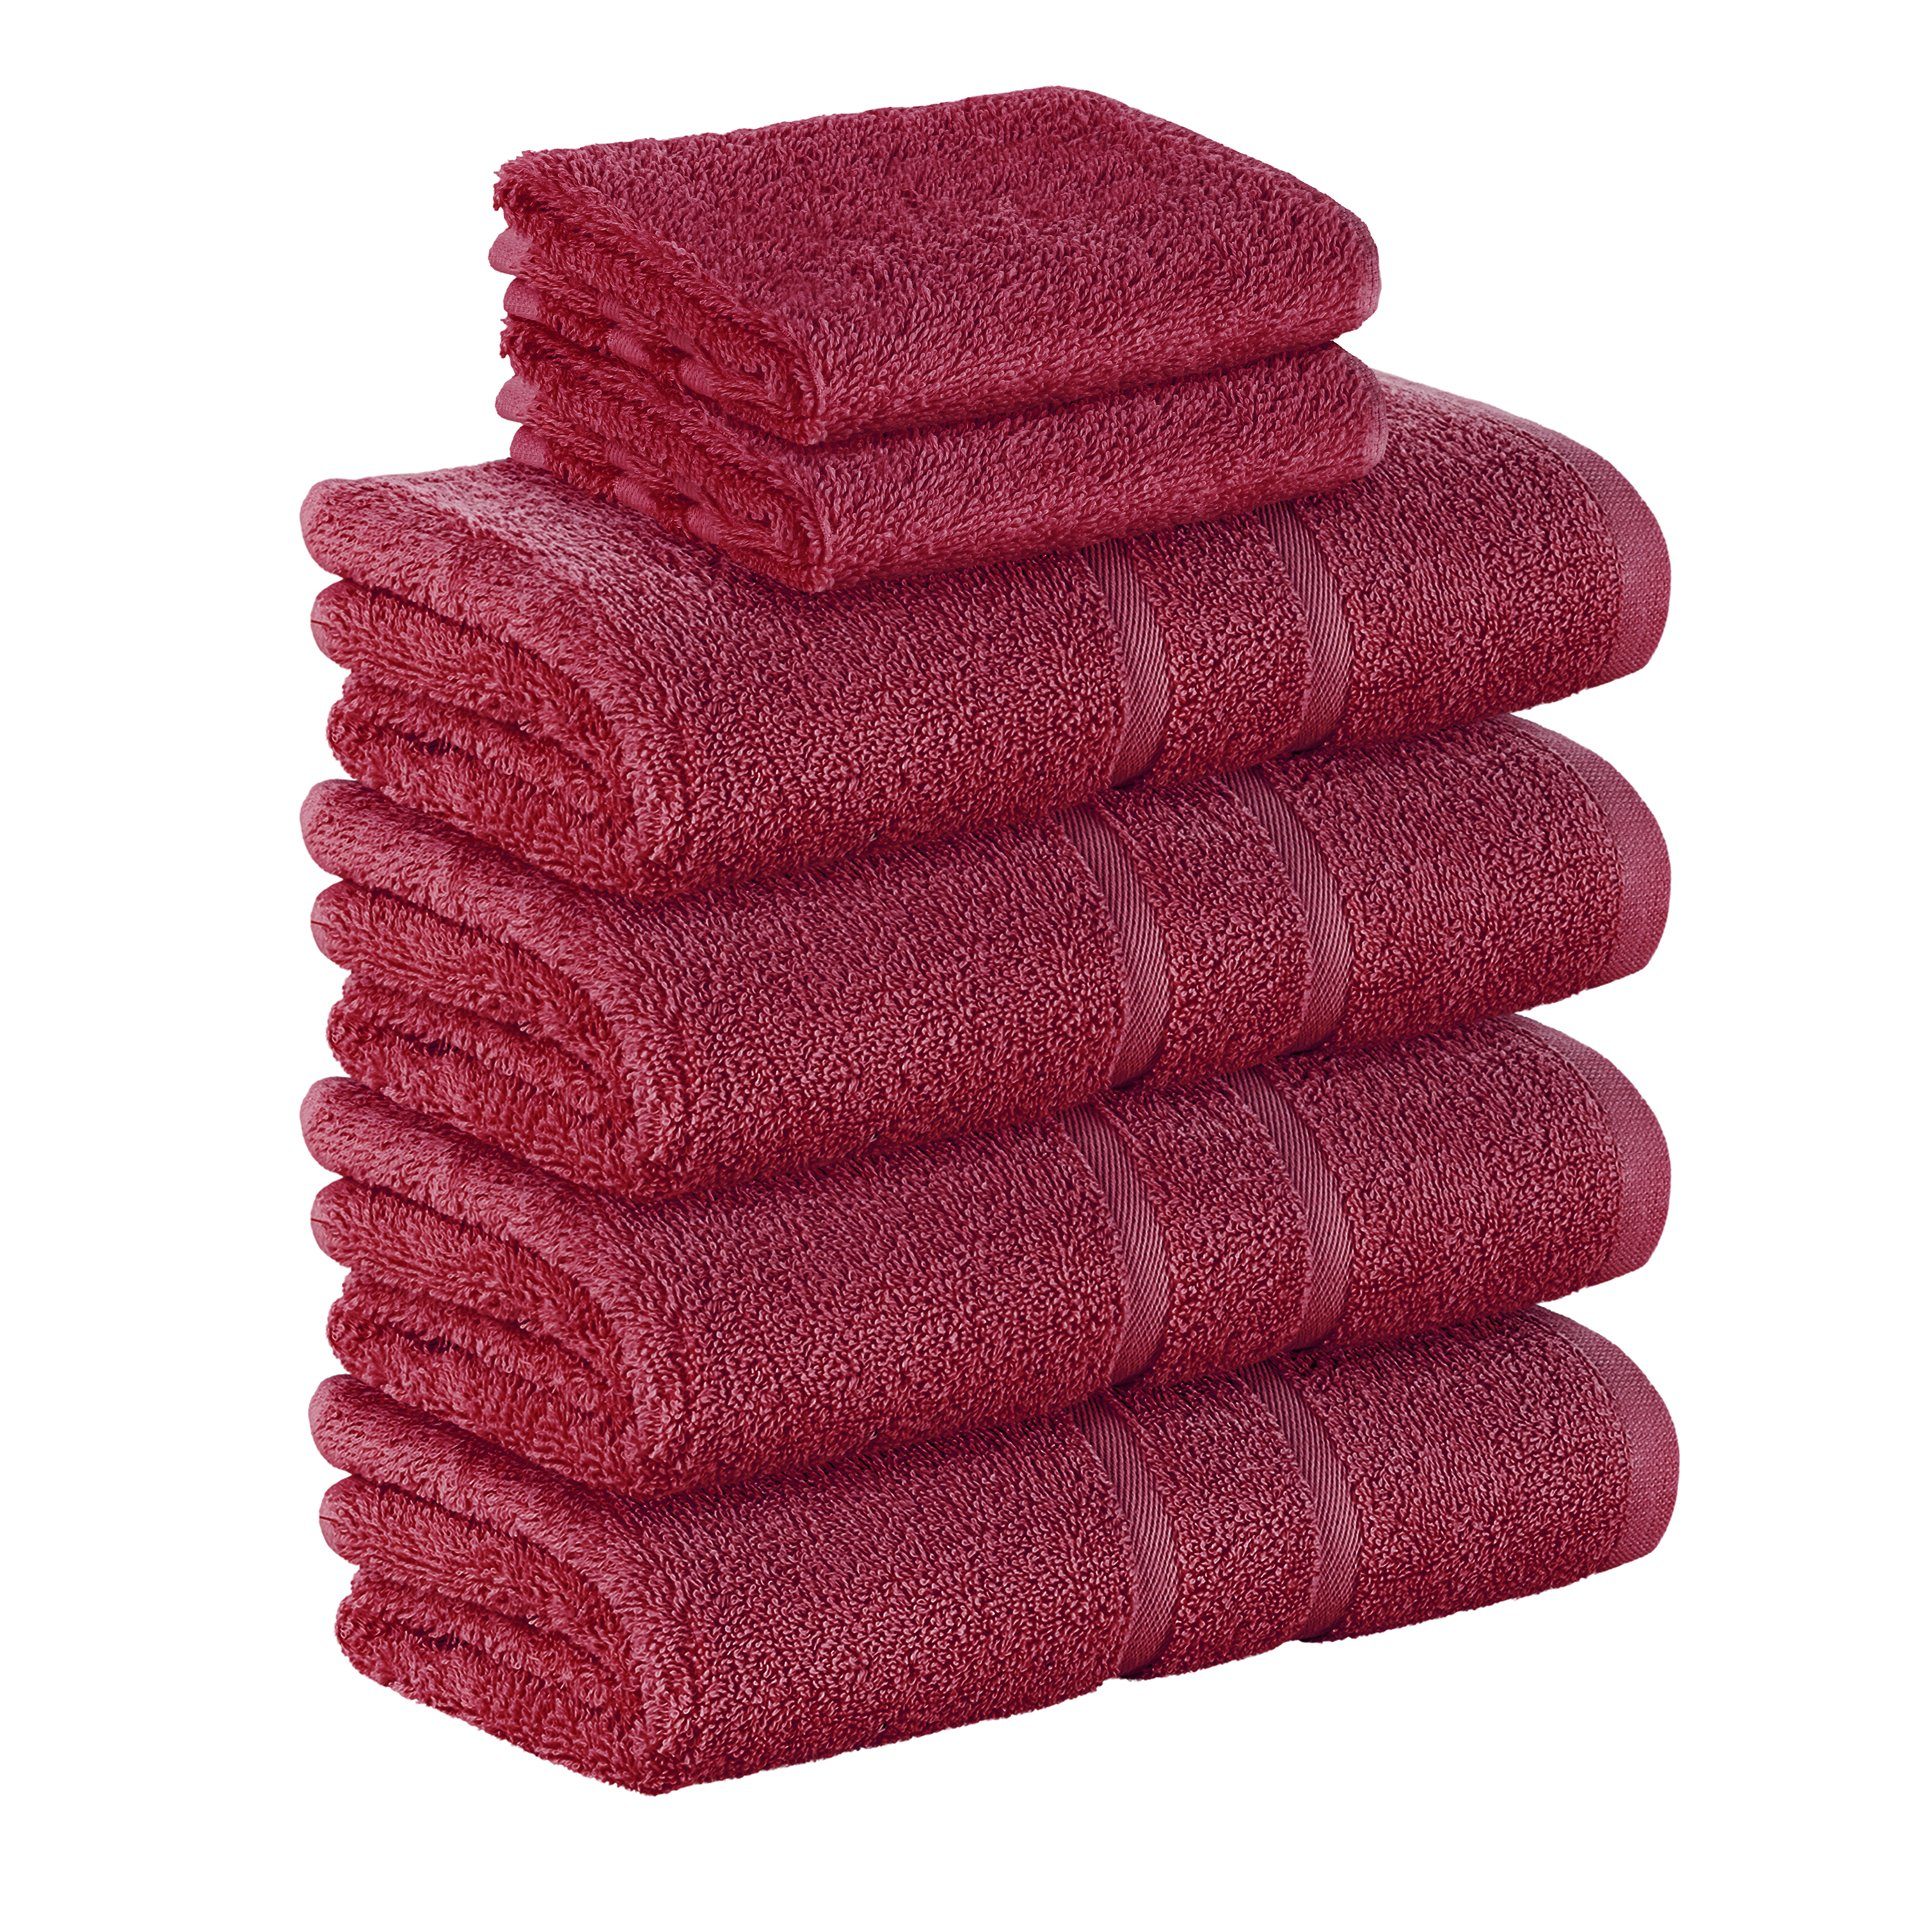 StickandShine Handtuch Set 2x Gästehandtuch 4x Handtücher als SET in verschiedenen Farben (6 Teilig) 100% Baumwolle 500 GSM Frottee 6er Handtuch Pack, 100% Baumwolle 500 GSM Bordeaux